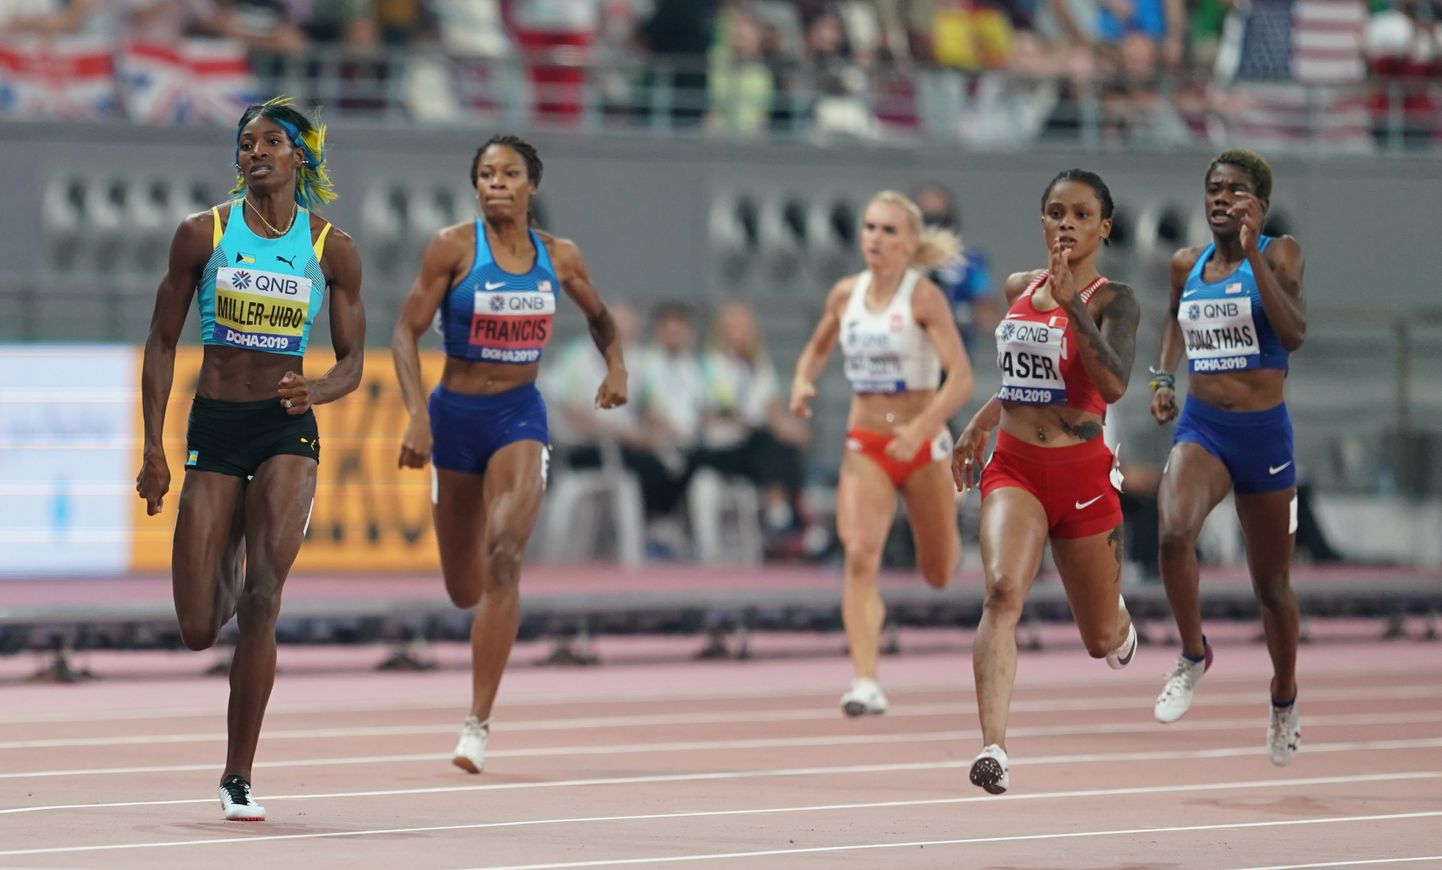 Naiste 400 meetri jooksu finaal Kataris Dohas toimuvatel kergejõustiku maailmameistrivõistlustel. Selle jooksu favoriidiks oli Bahama jooksja Shaunae Miller-Uibo, kuid jooksu võitis Bahreini Salwa Eid Naser. Miller-Uibo sai teise koha. Pilt on illustreeriv